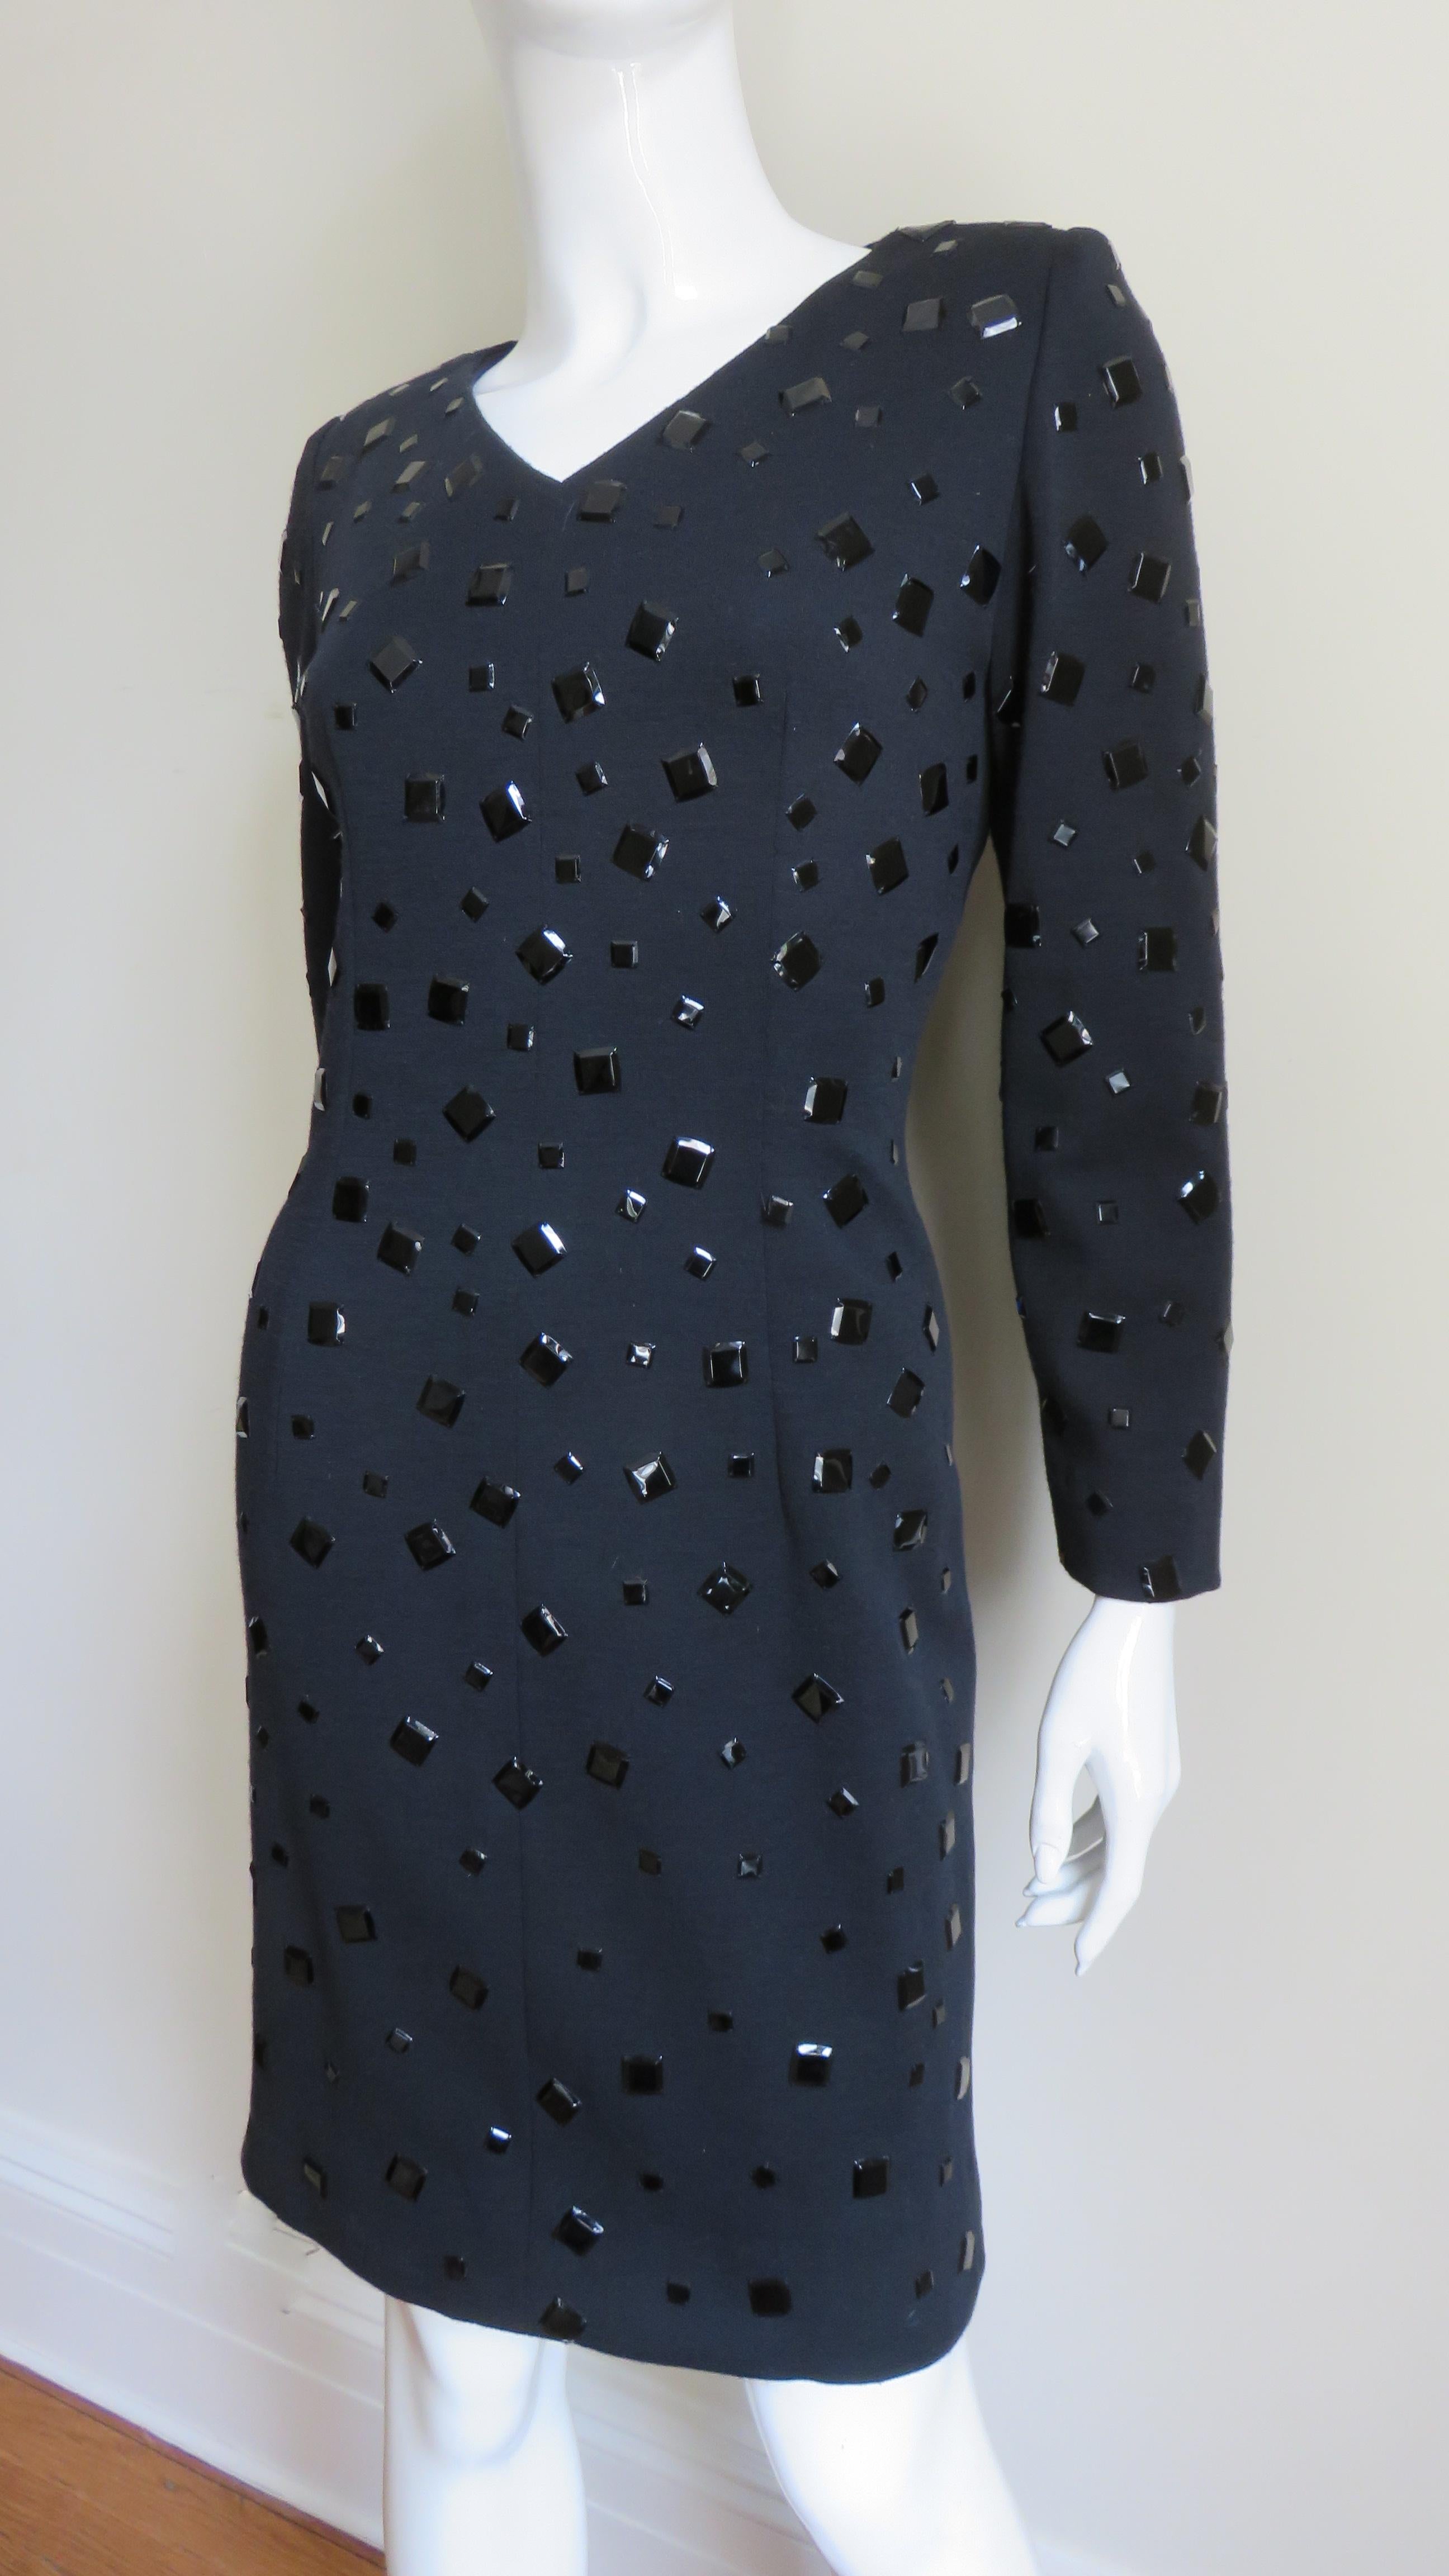 Une fabuleuse robe en jersey de laine signée Givenchy.  Elle est semi-montante avec un petit décolleté en V, des manches longues et des épaules légèrement paddées. La robe est entièrement recouverte de carrés de métal noir brillant de différentes